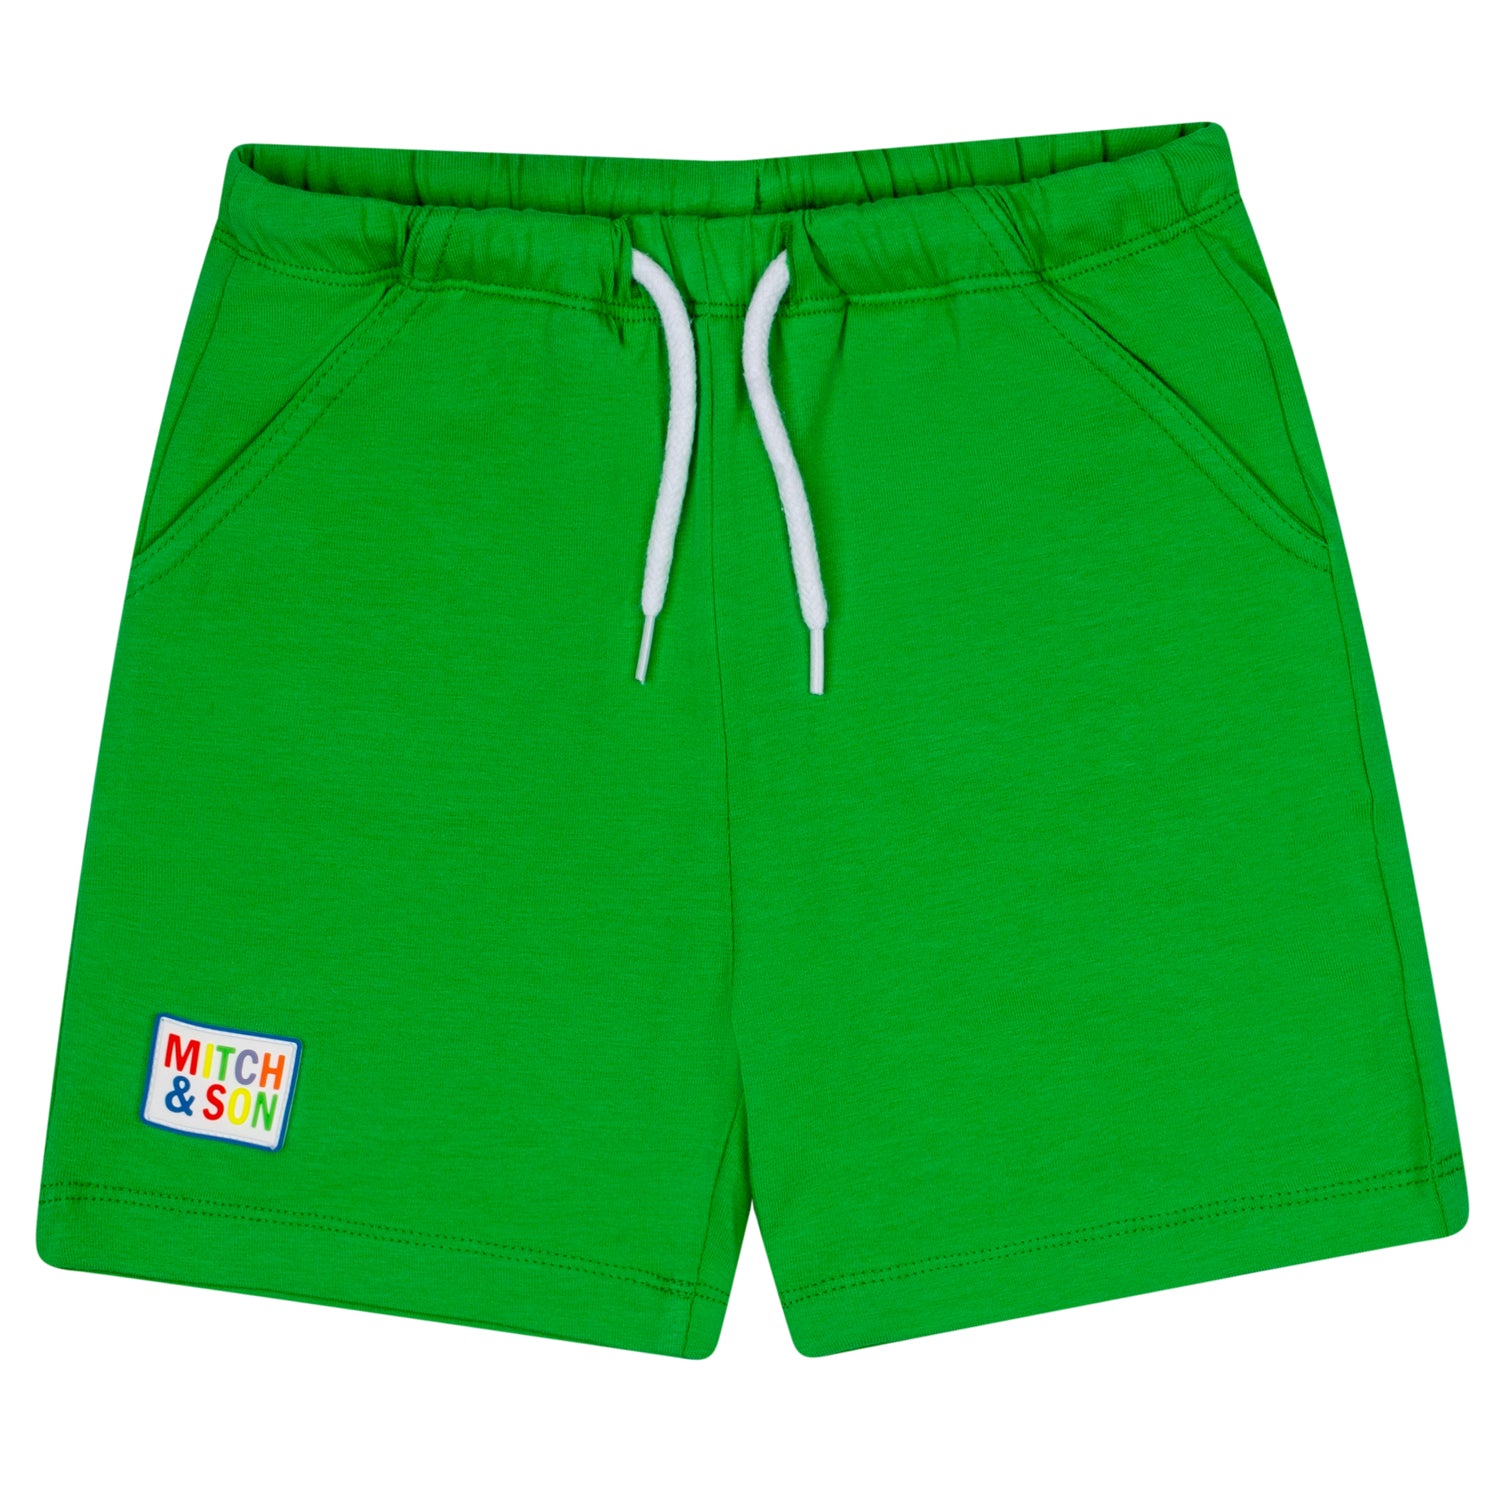 Green Jersey Set